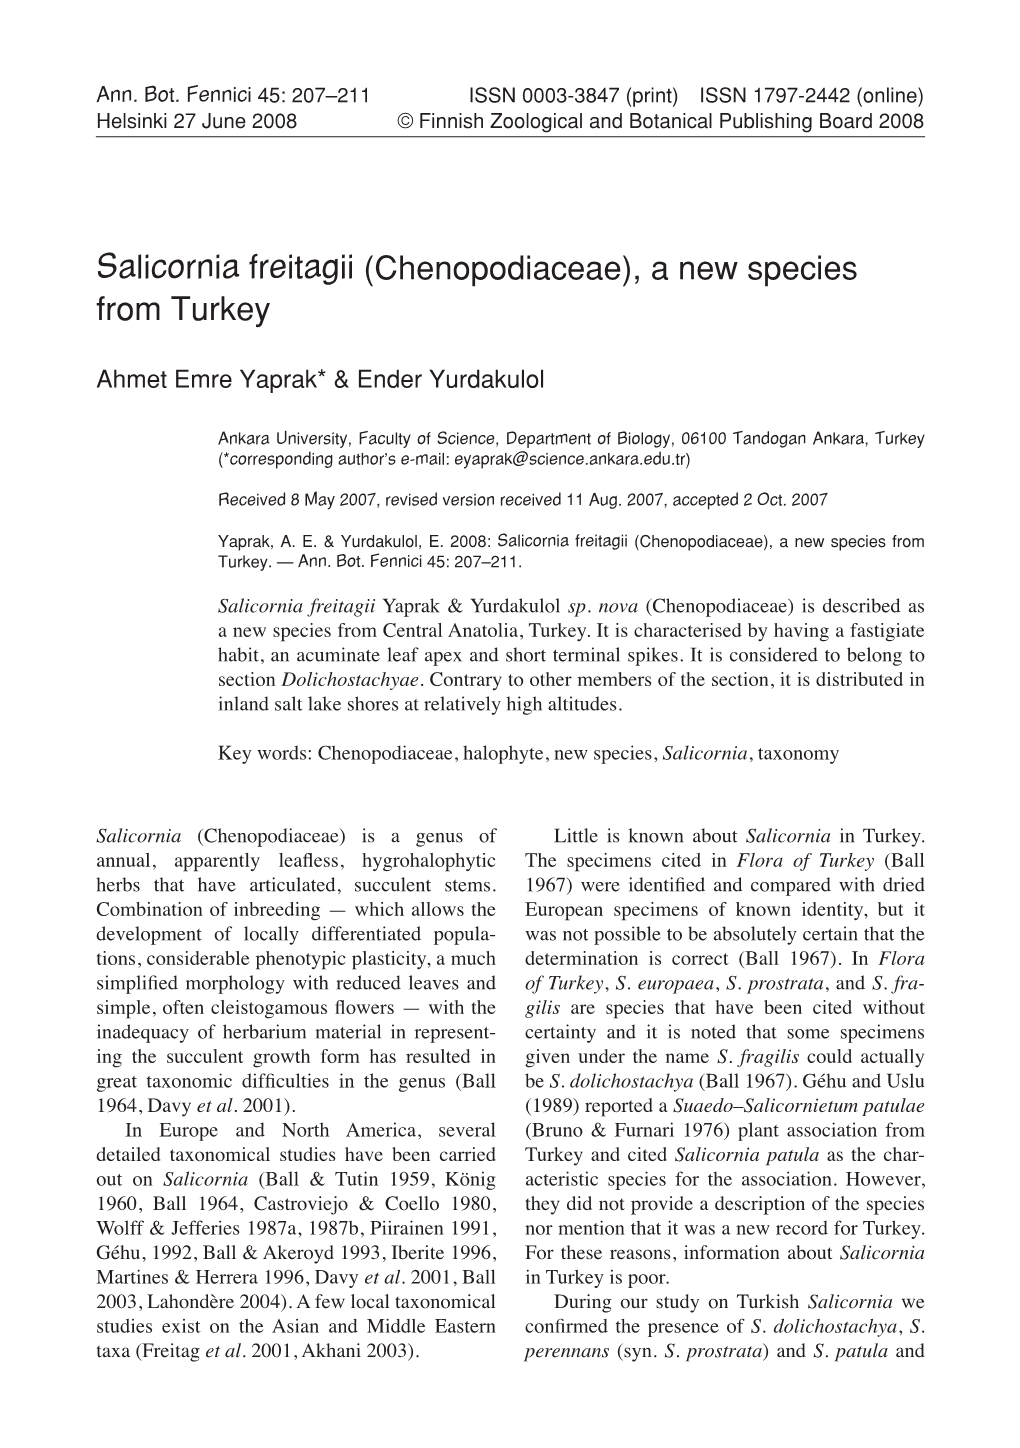 Salicornia Freitagii (Chenopodiaceae), a New Species from Turkey